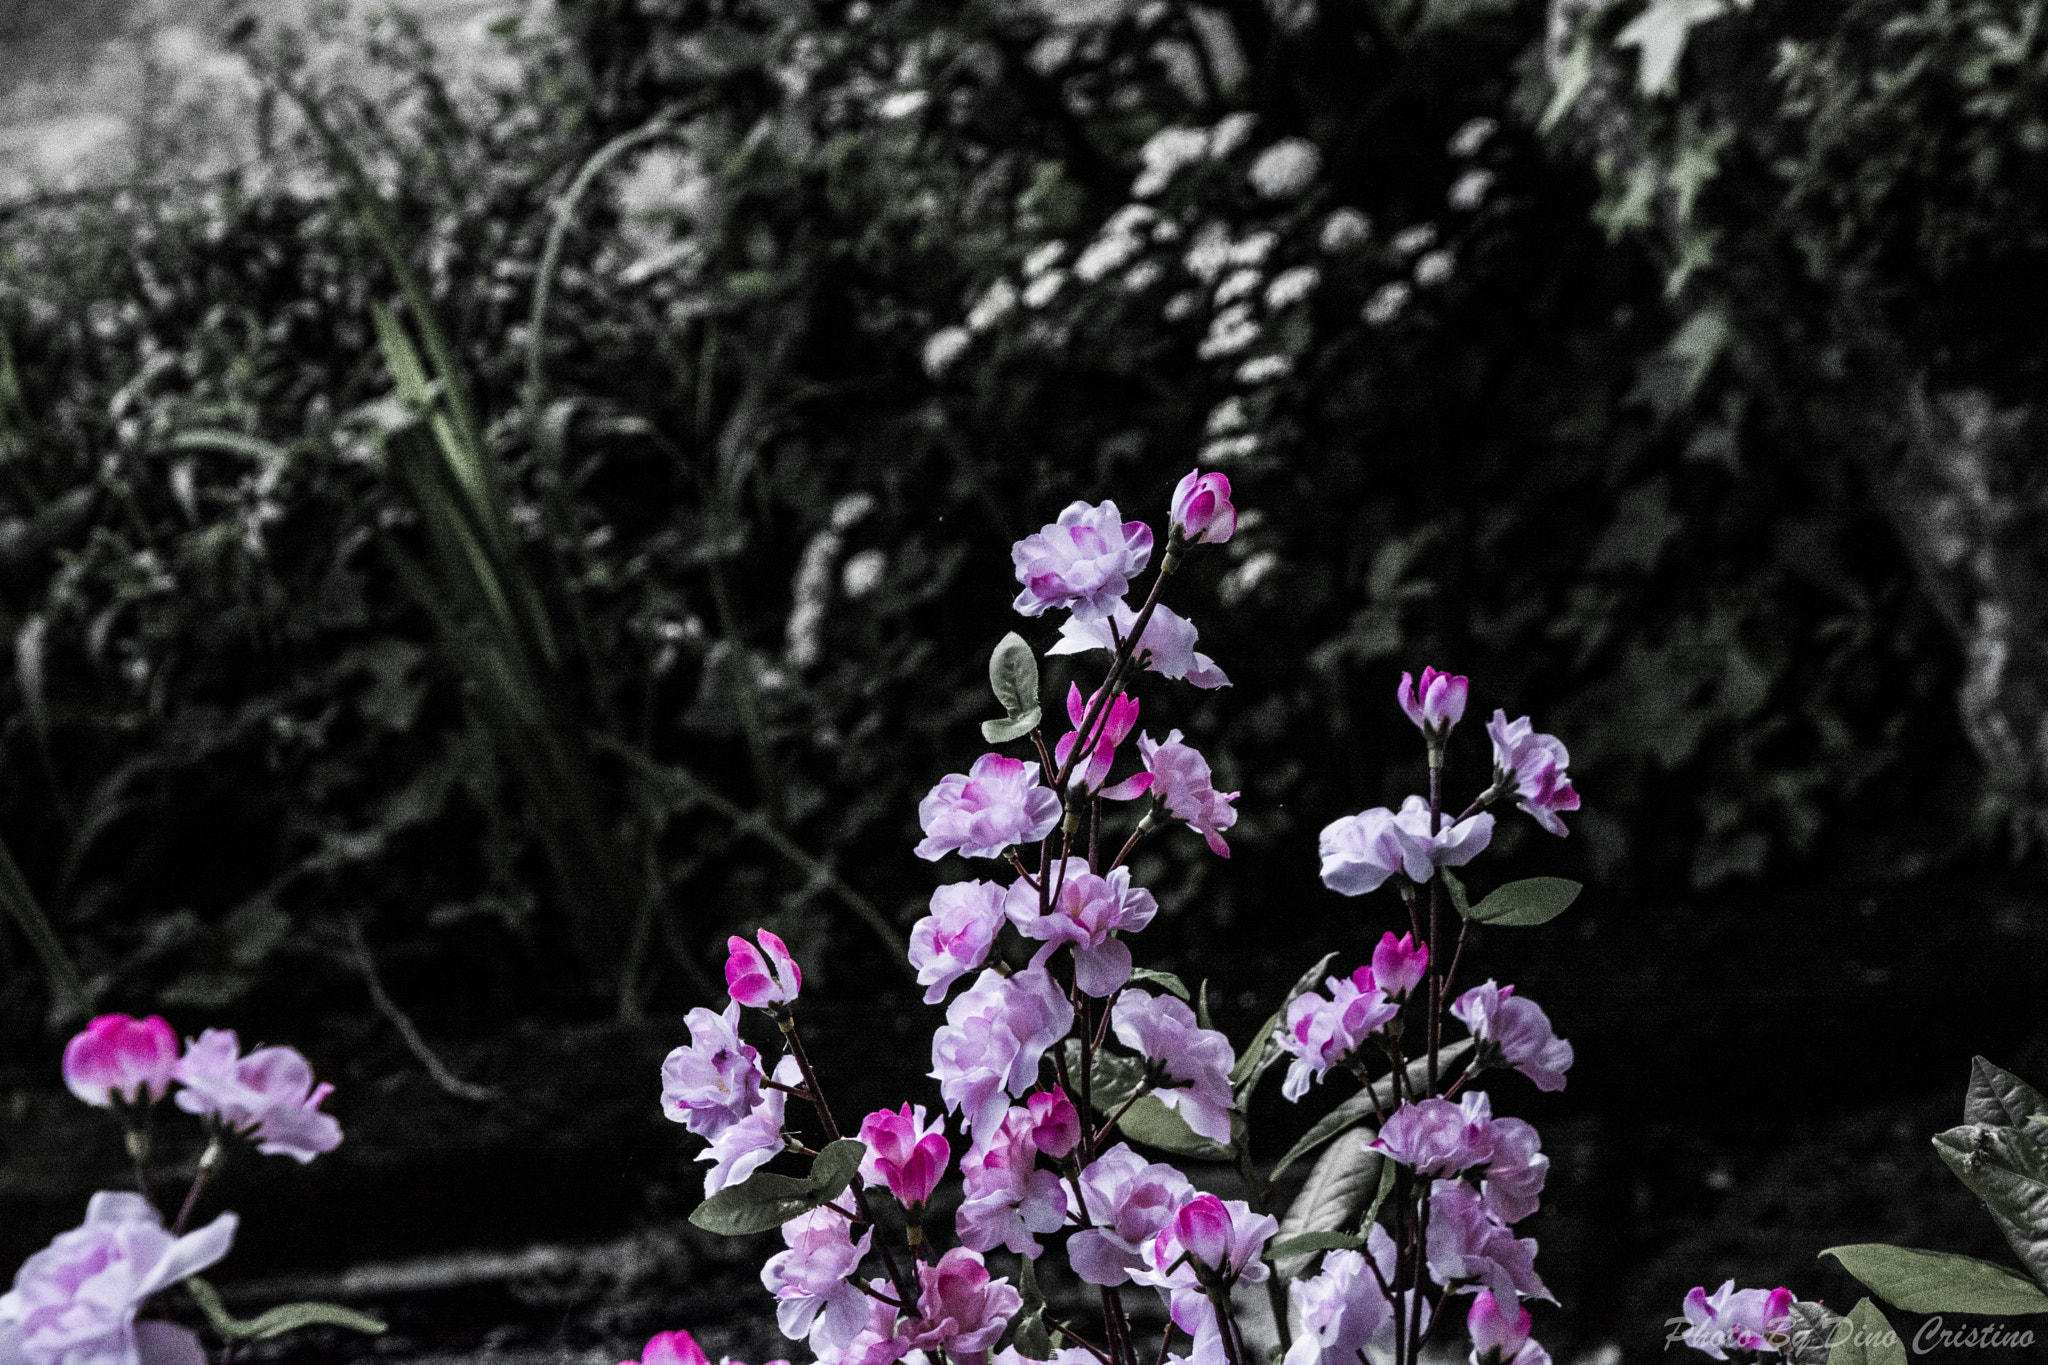 Nikon D7100 sample photo. Rosacee fiori di pesco fiori dino cristino () photography